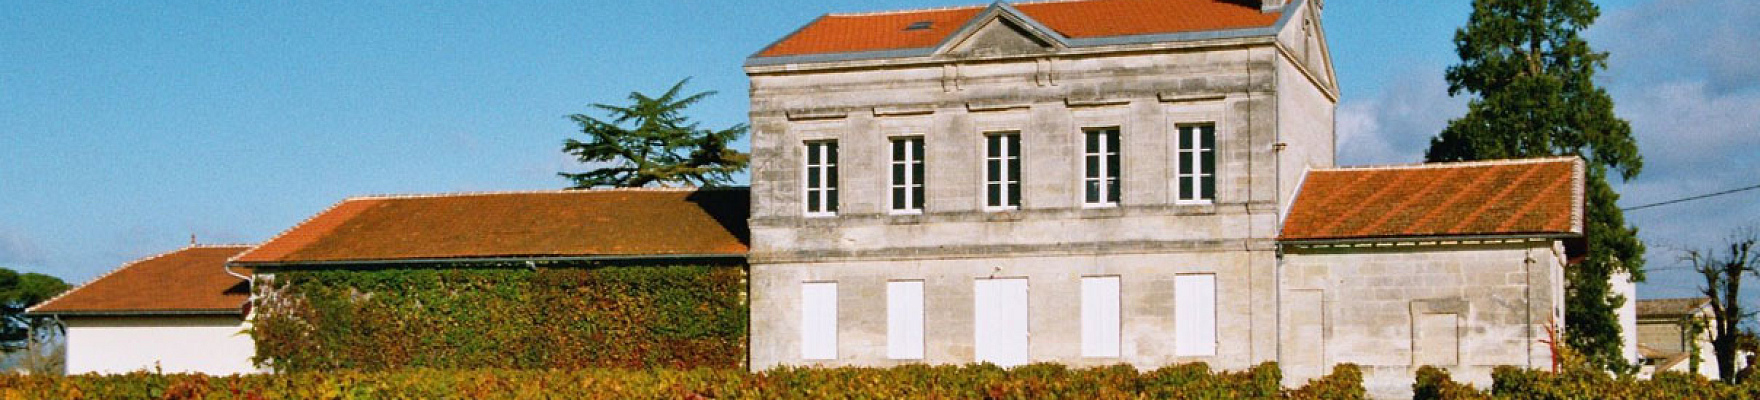 Château du Domaine de l'Eglise